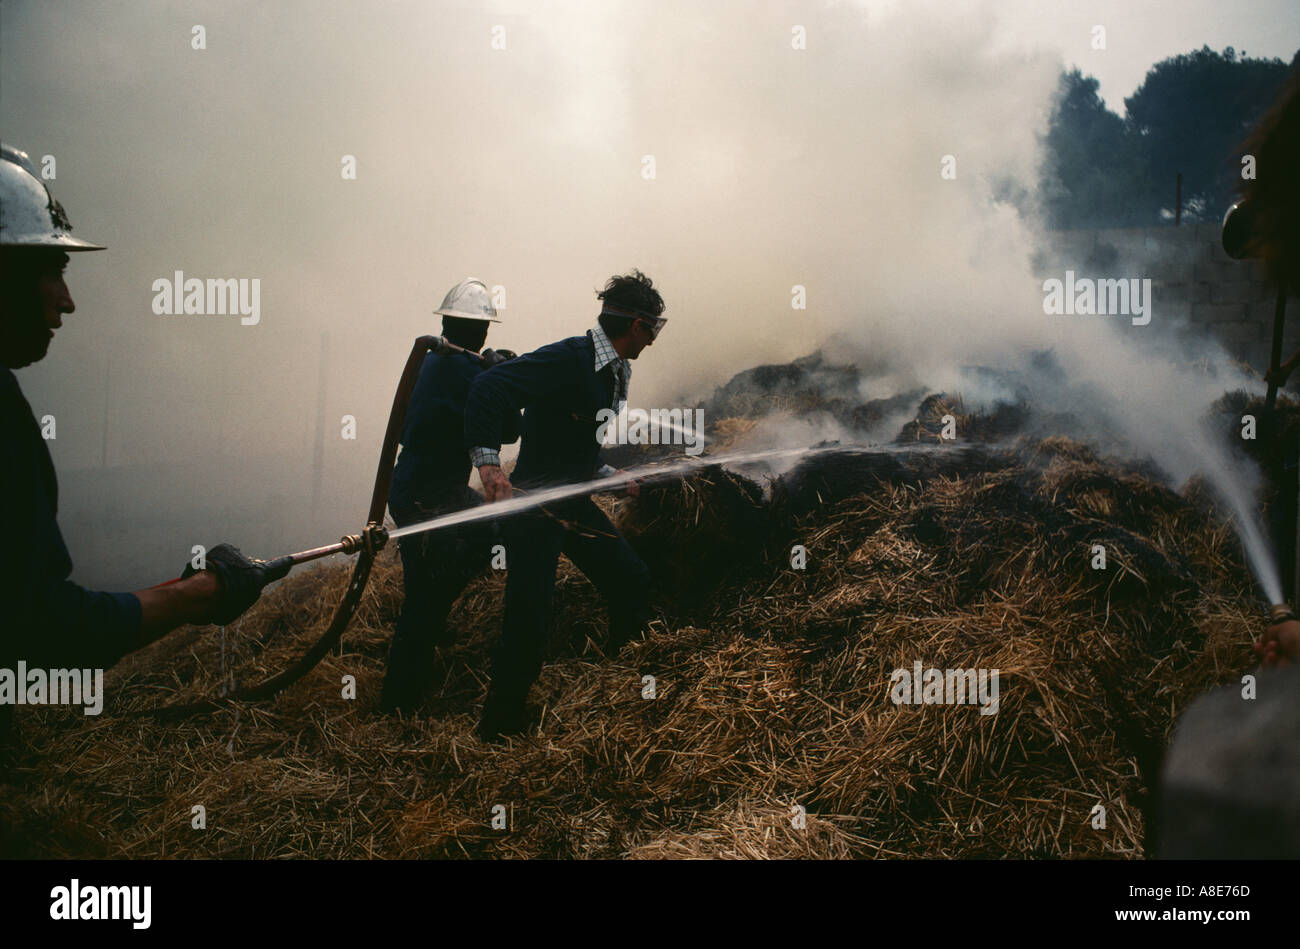 Les pompiers et lutte contre l'agriculteur un incendie, tuyaux d'incendie, la fumée des incendies de forêt, près d'Avignon, Vaucluse, Provence, France, Europe, Banque D'Images